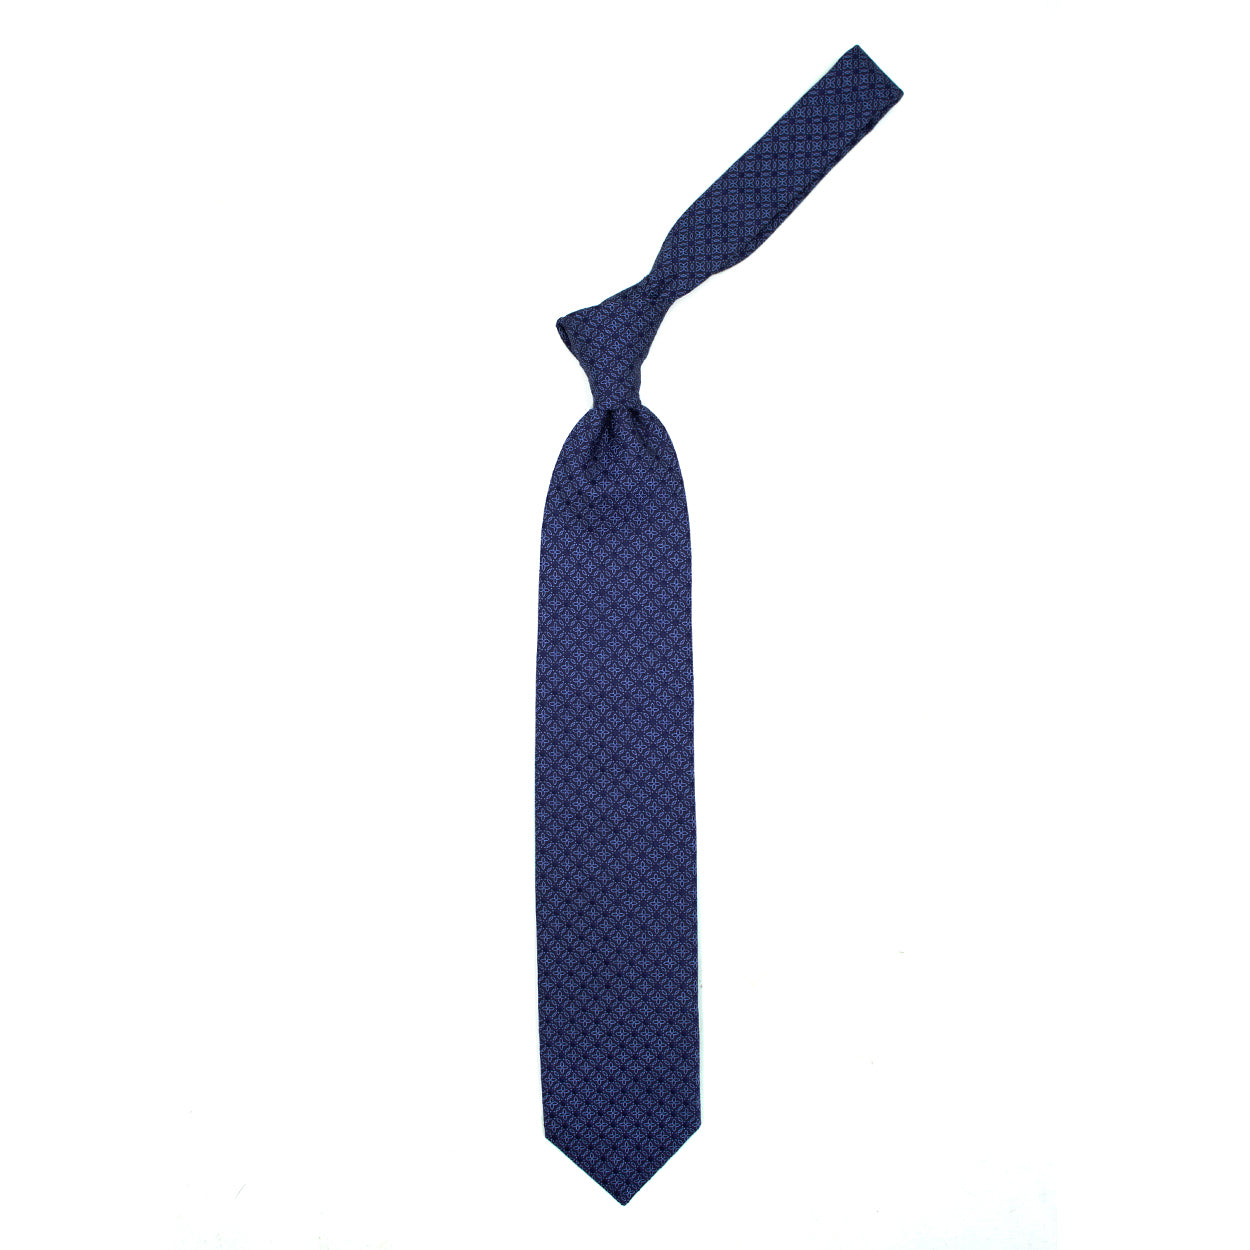 Cravatta blu con fiori e puntini azzurri